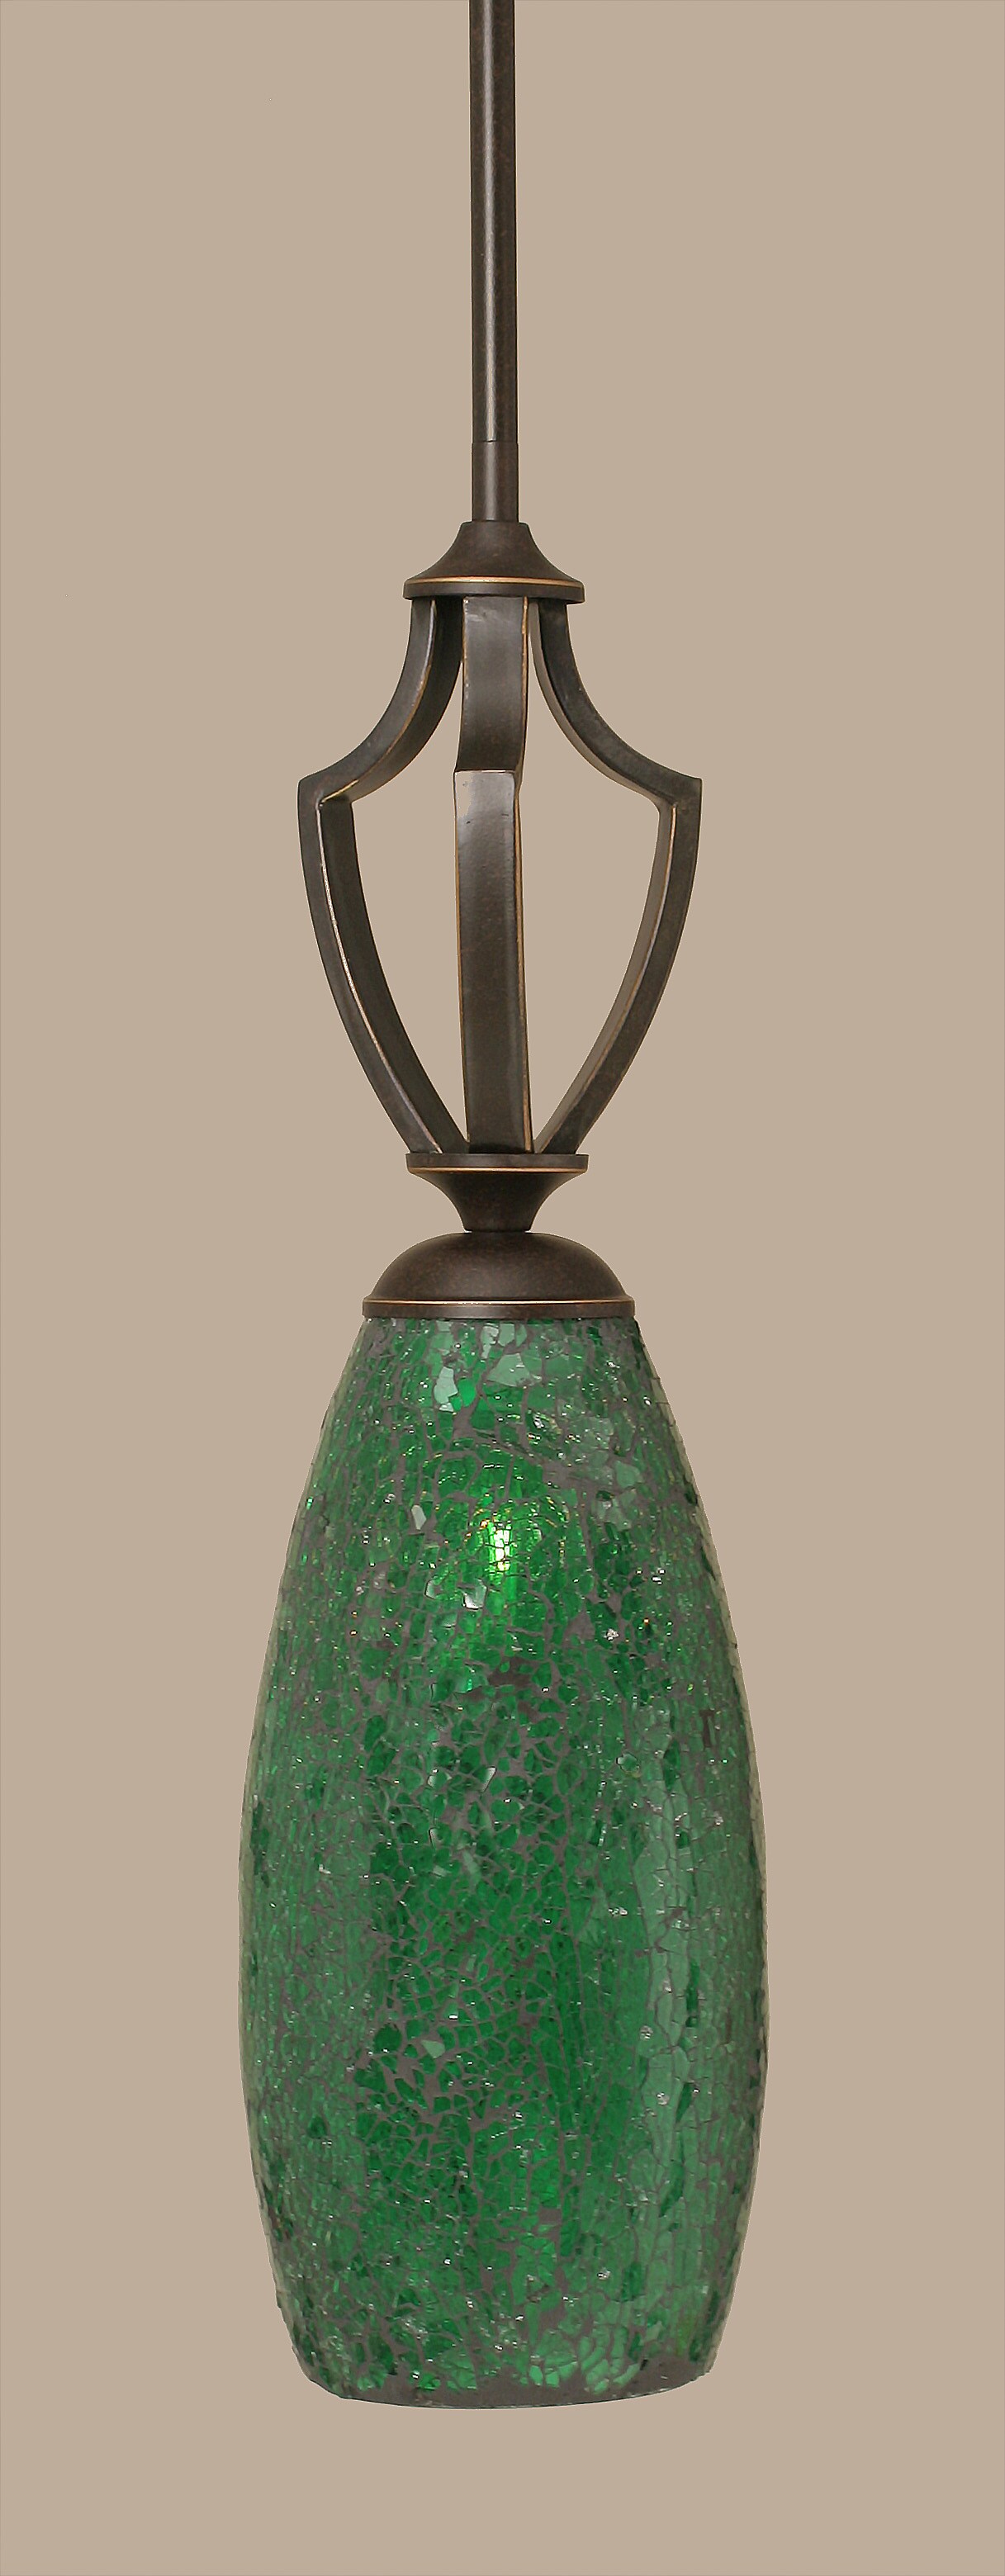 Zilo 1 Light Mini Pendant Shown In Dark Granite Finish With 5.5 Green Fusion Glass